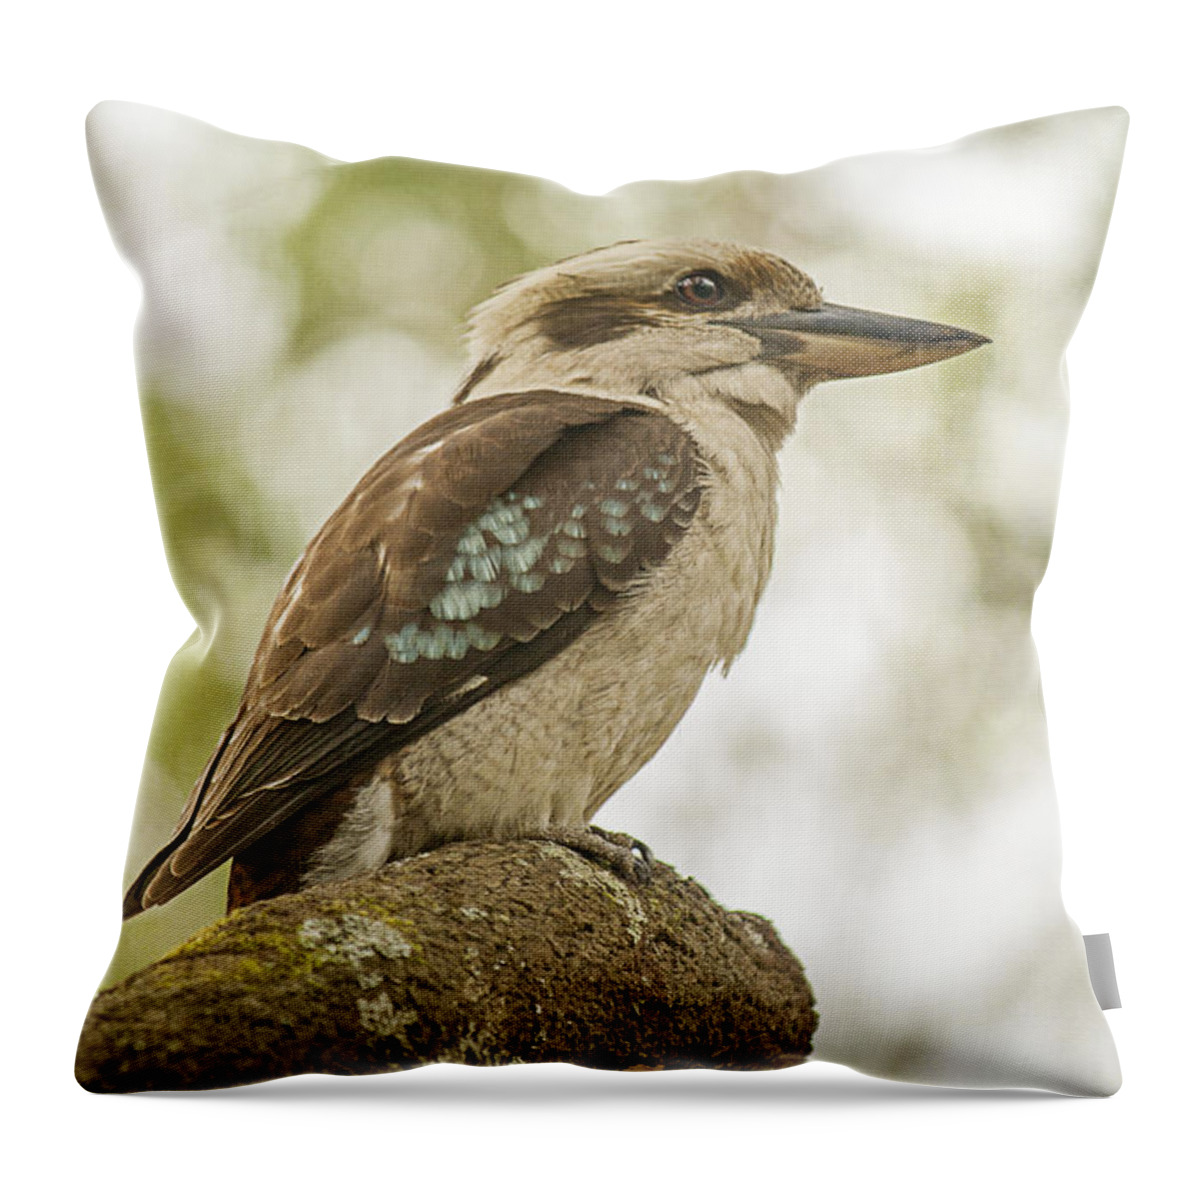 Kookaburra Throw Pillow featuring the photograph Kookaburra by Linda Lees